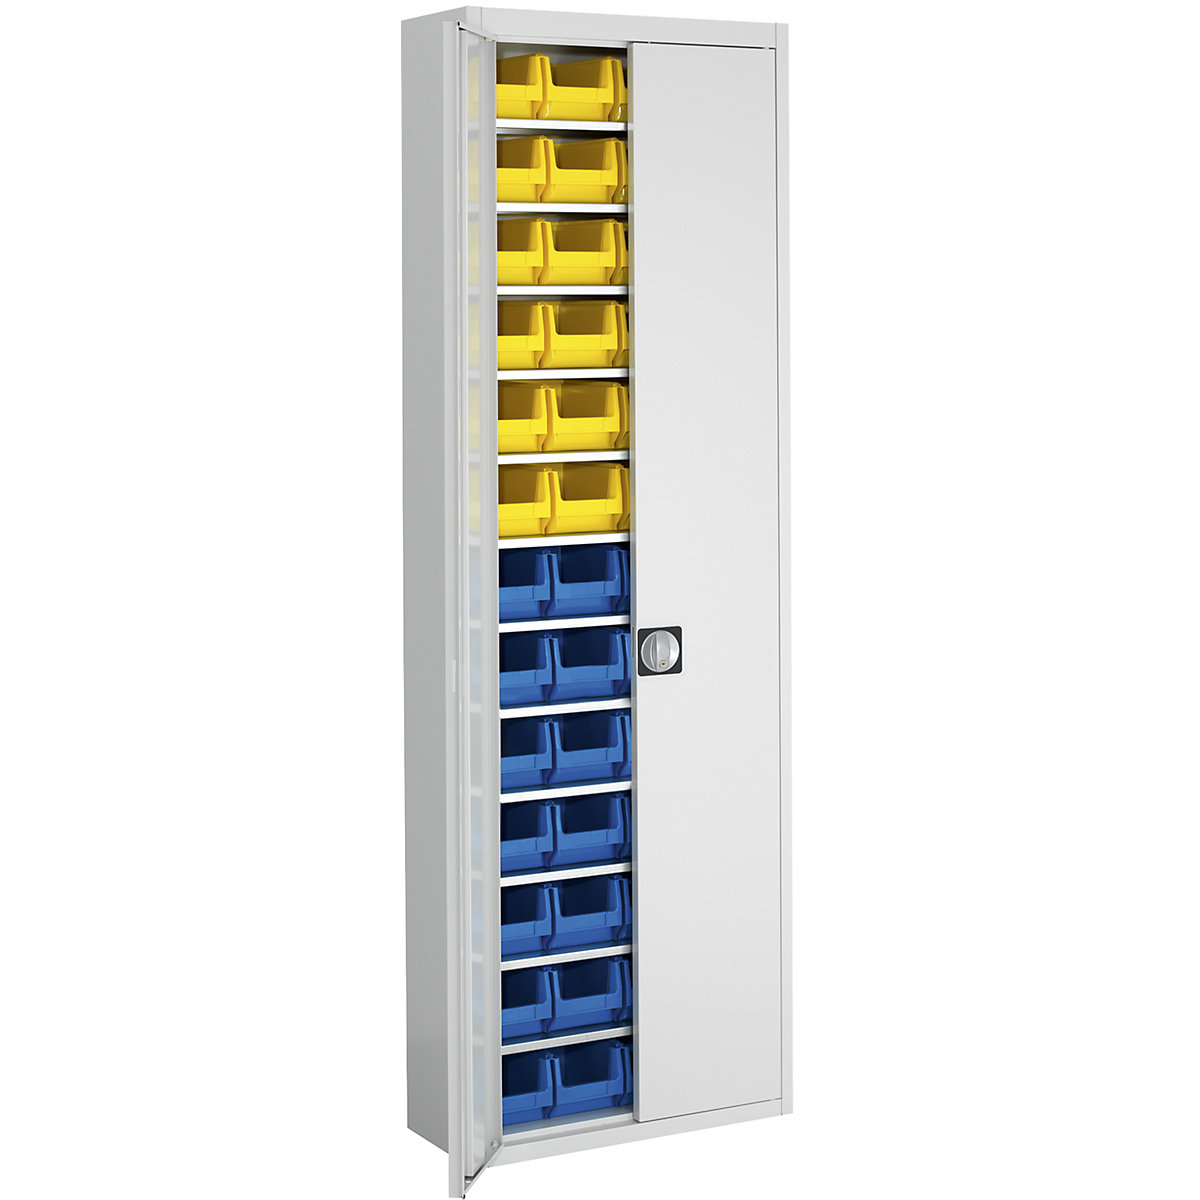 Raktári szekrény nyitott tárolódobozokkal – mauser, ma x szé x mé 2150 x 680 x 280 mm, egyszínű, szürke, 52 doboz-6